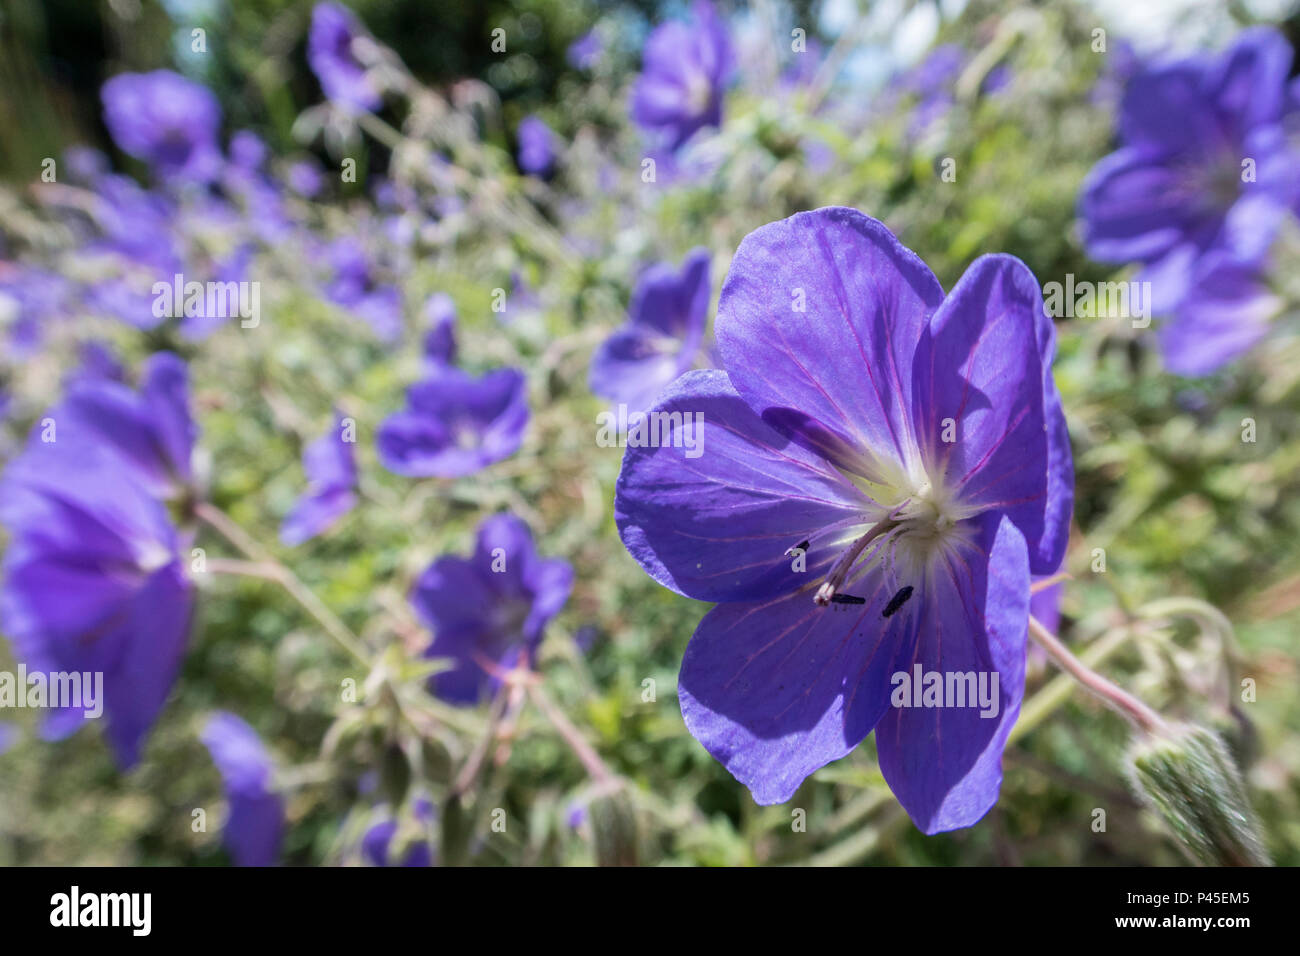 Geranium Orion,  cranesbill 'Orion', a blue flowering geranium plant. Stock Photo